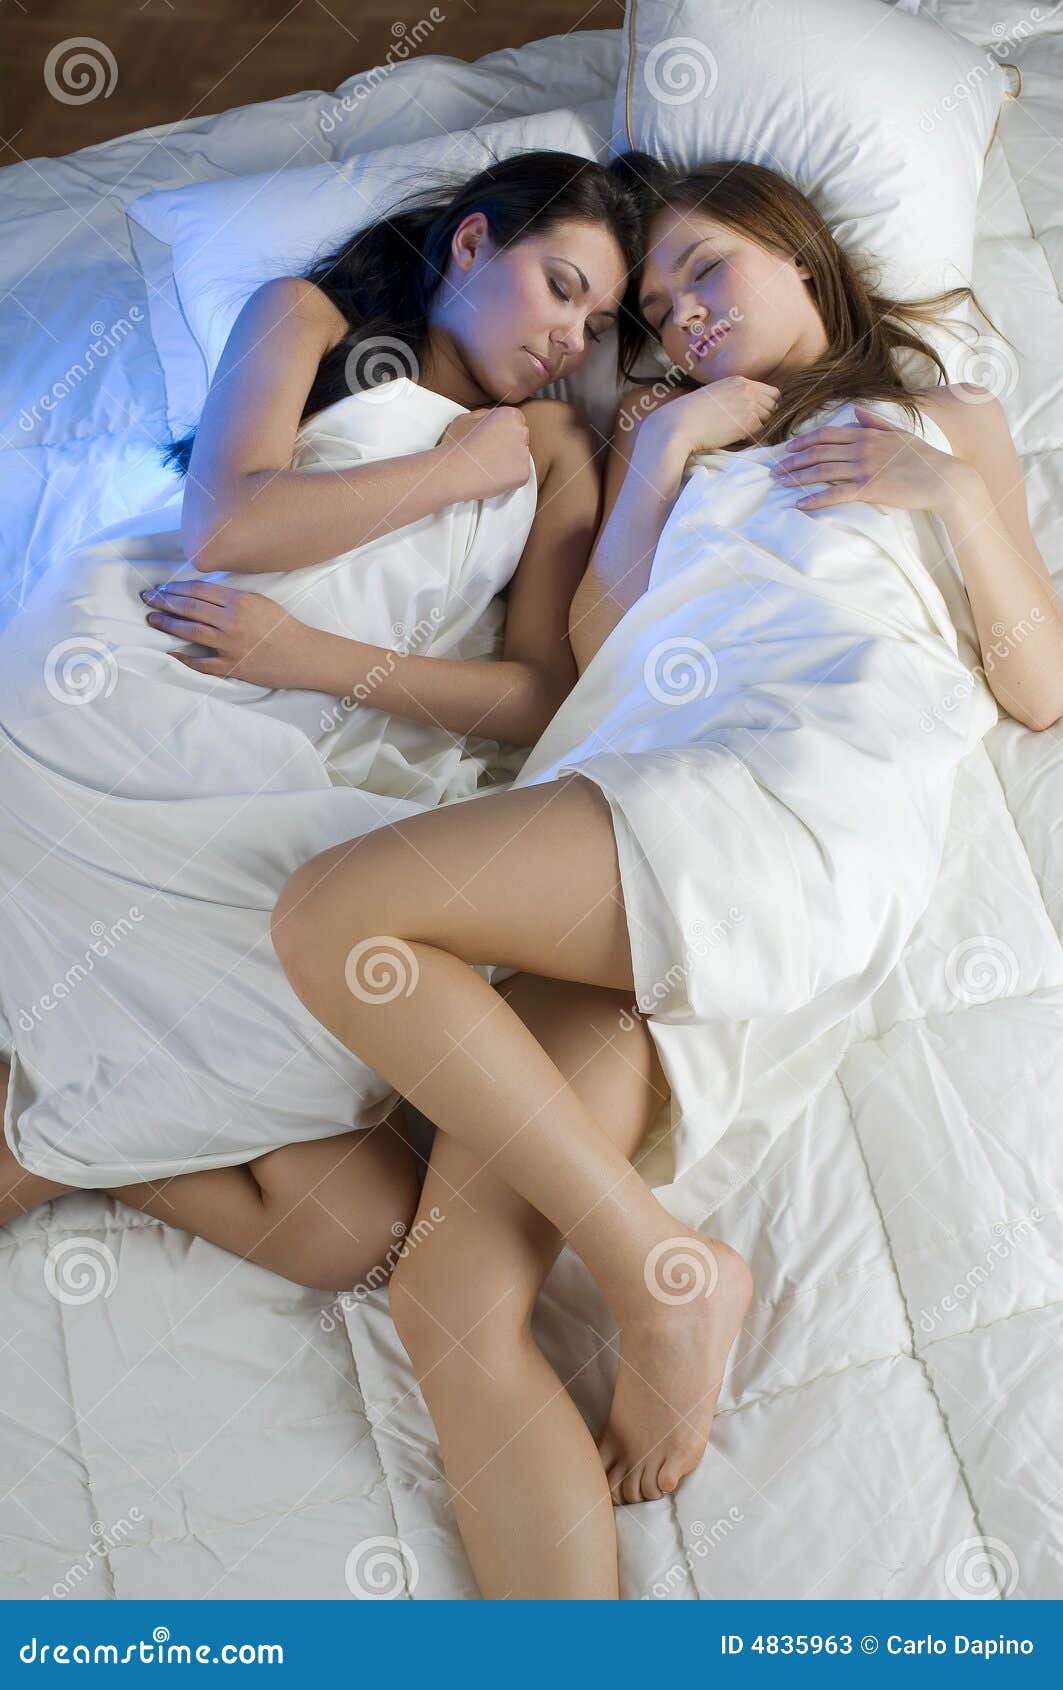 Русская подруга в постели. Две девочки в постели. Две девушки в кровати. Симпатичные подружки в постели. Две сестрички в постели.